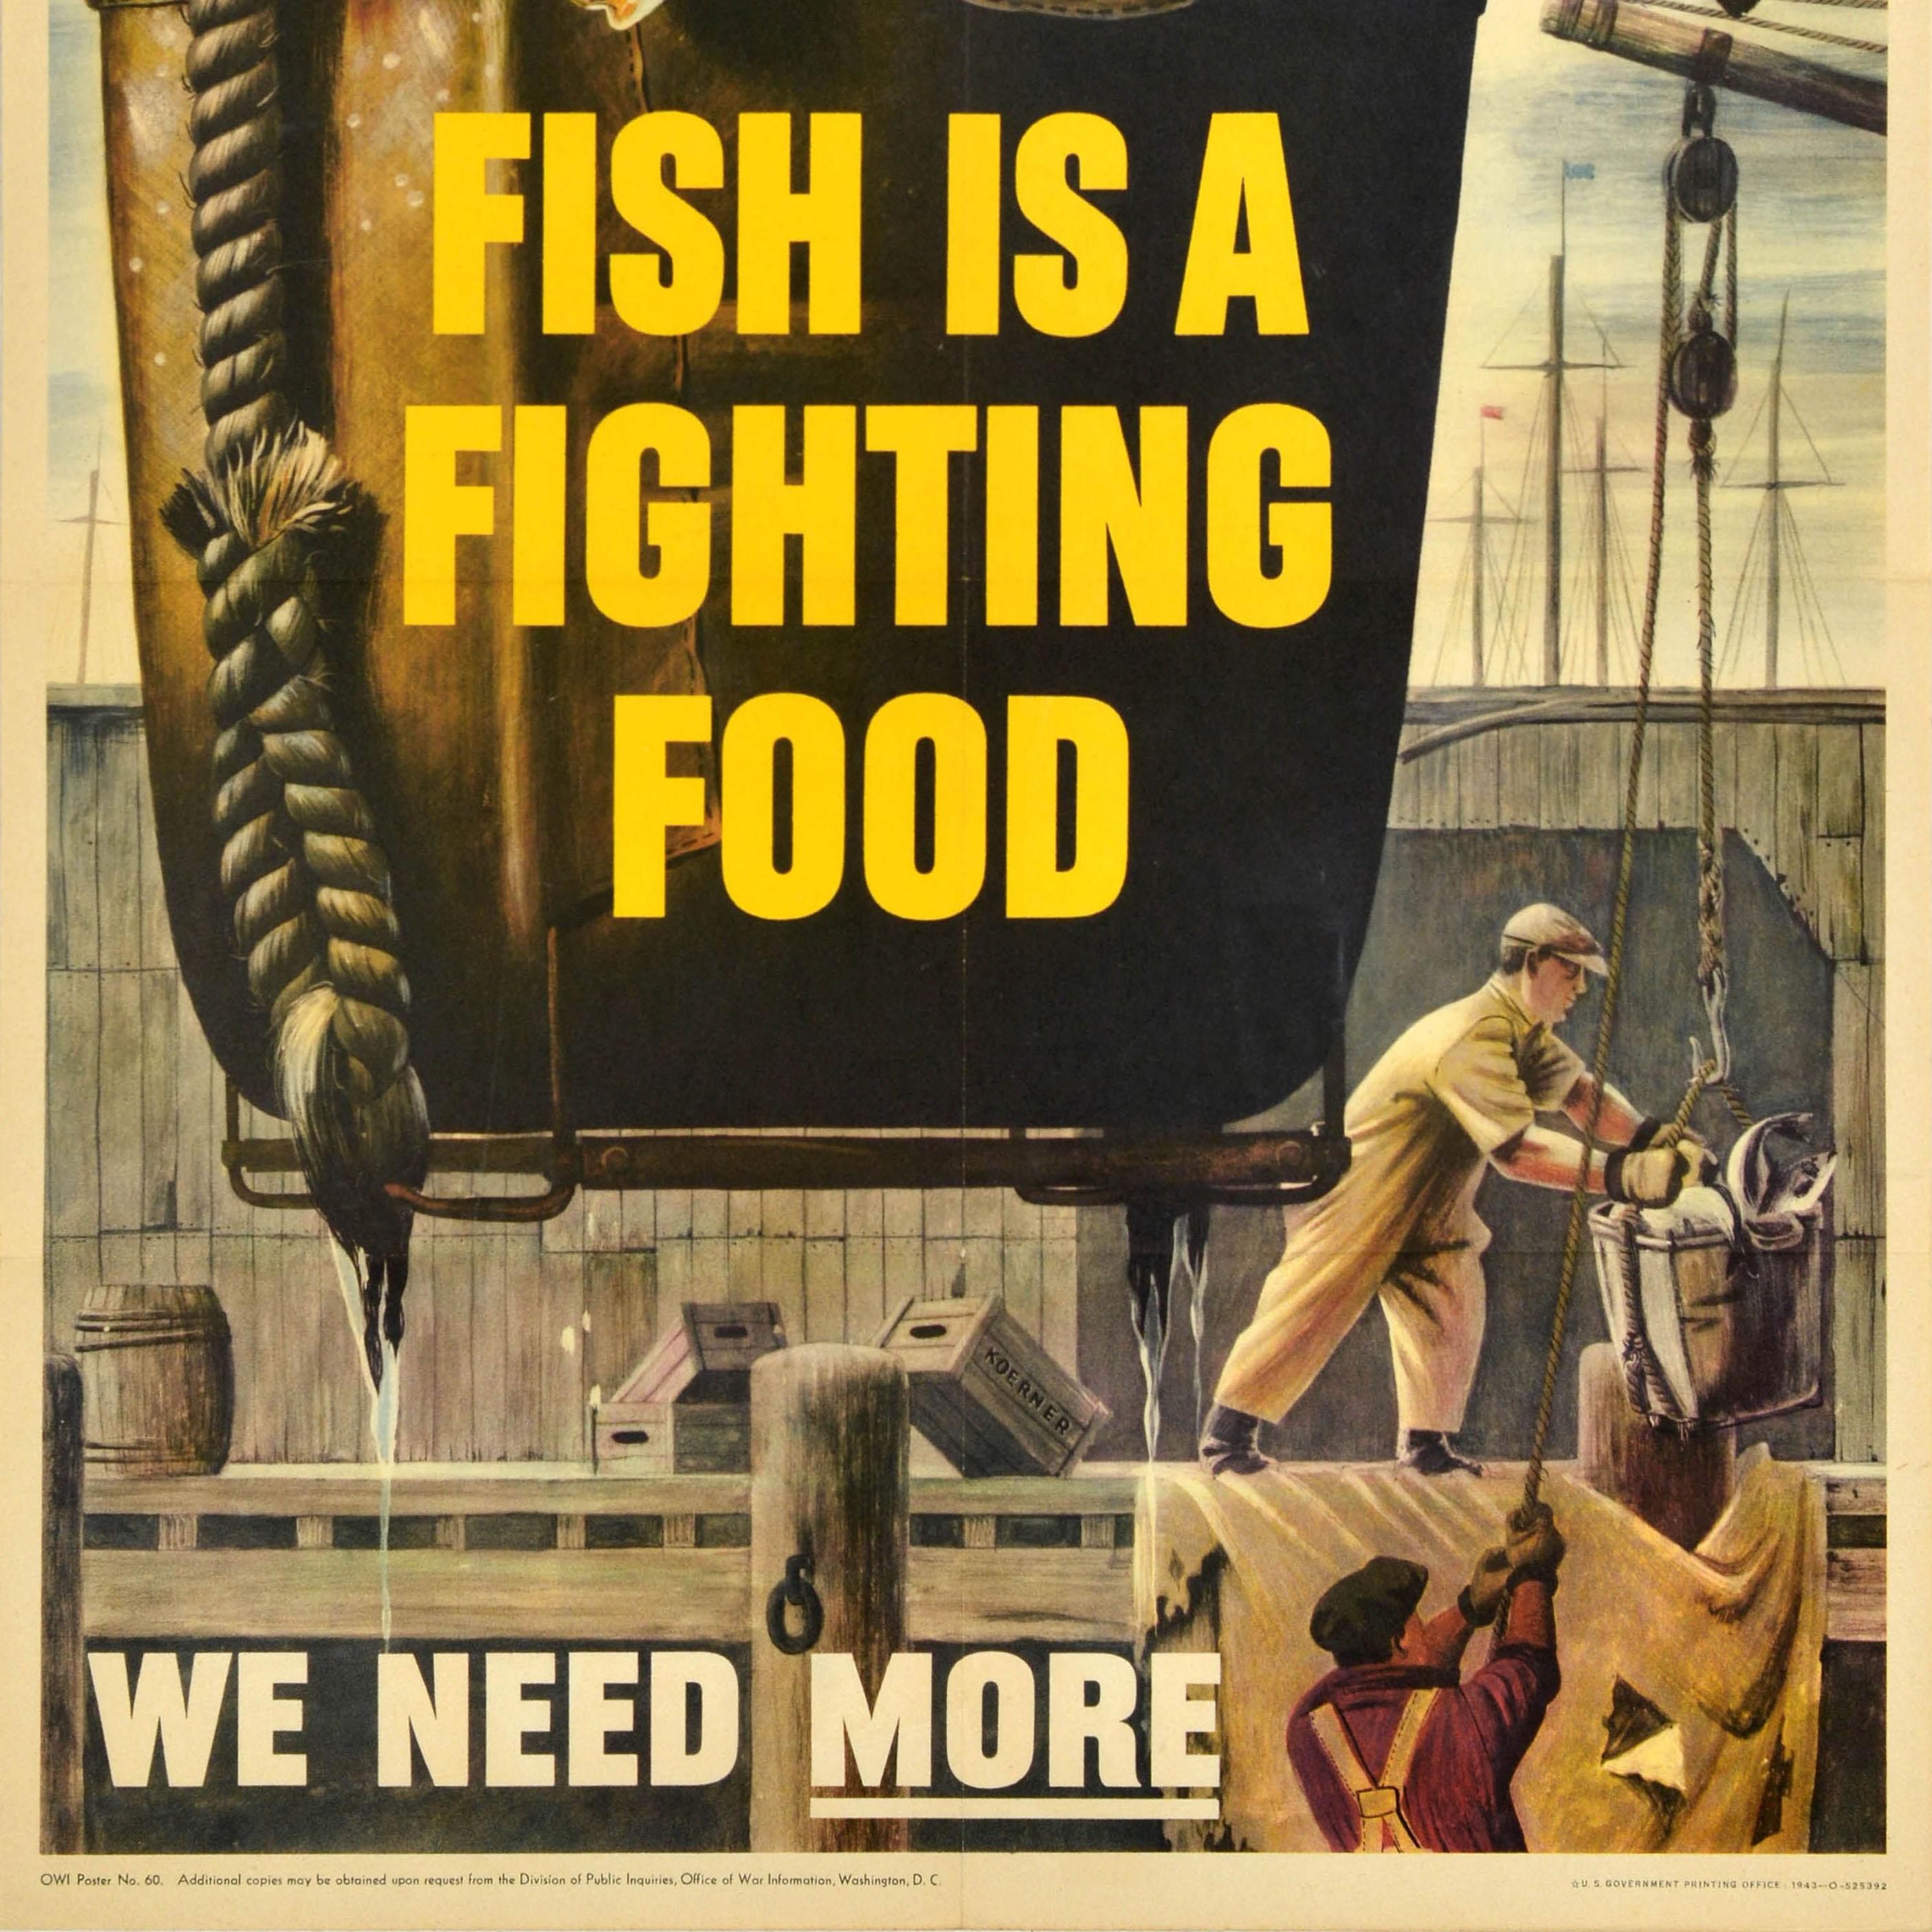 Original-Plakat für die Heimatfront des Zweiten Weltkriegs - Fish is a fighting food We need more - mit einem Bild eines Fischfangs, der in einem Eimer von Fischern auf einem hölzernen Dock mit sichtbaren Masten im Hintergrund eingeholt wird, und